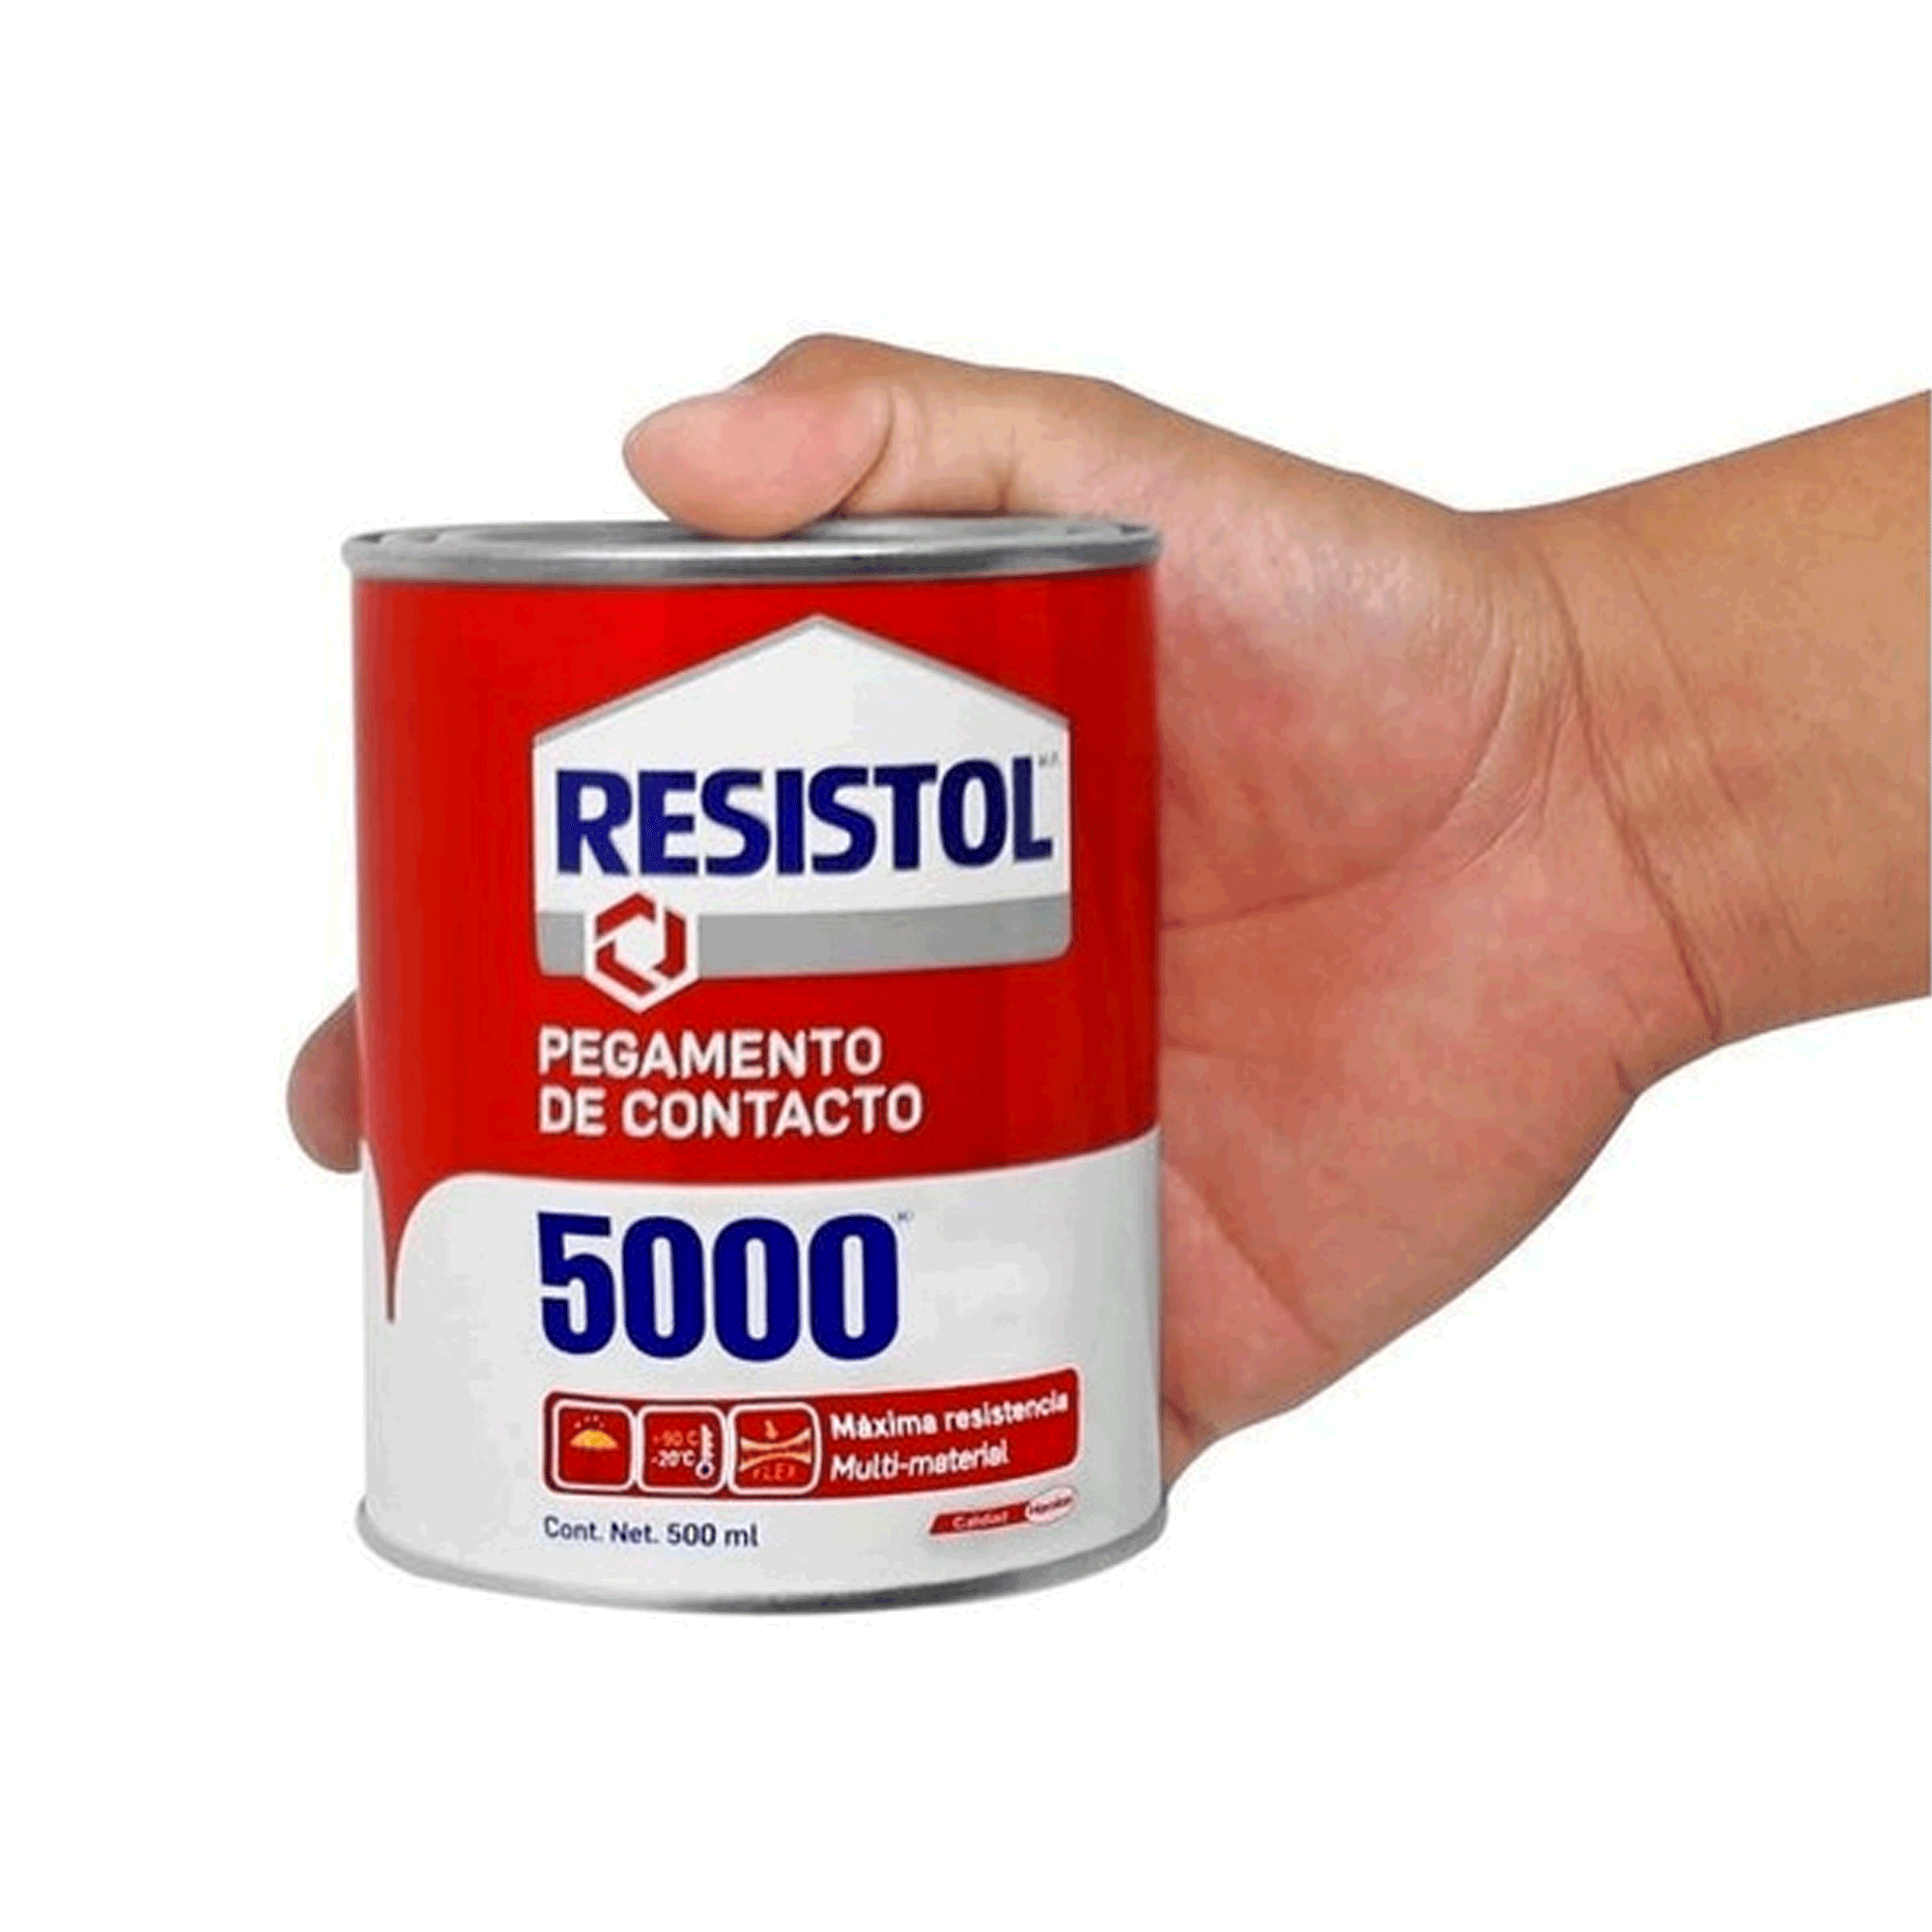 RESISTOL 5000 PEGAMENTO DE CONTACTO DE 500 ML | The Home Depot México